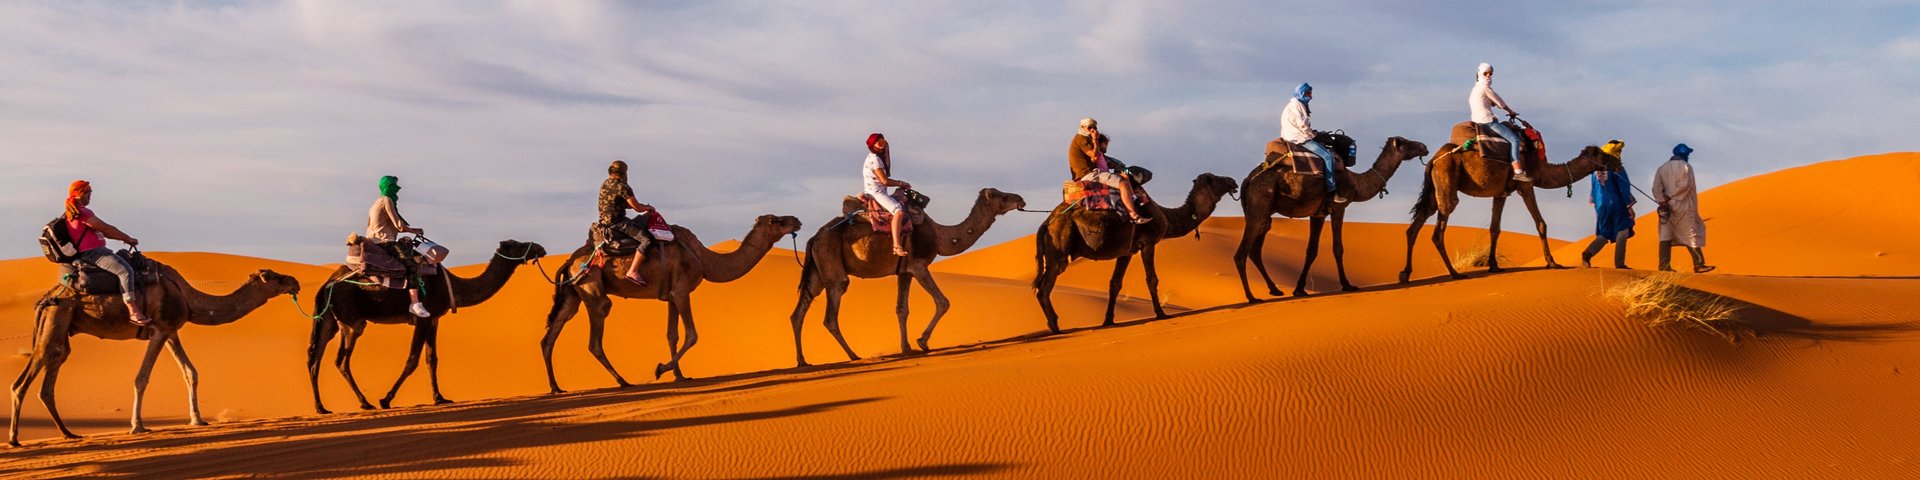 Karawane mit mehreren berittenen Kamelen in der Sahara-Wüste in Marokko